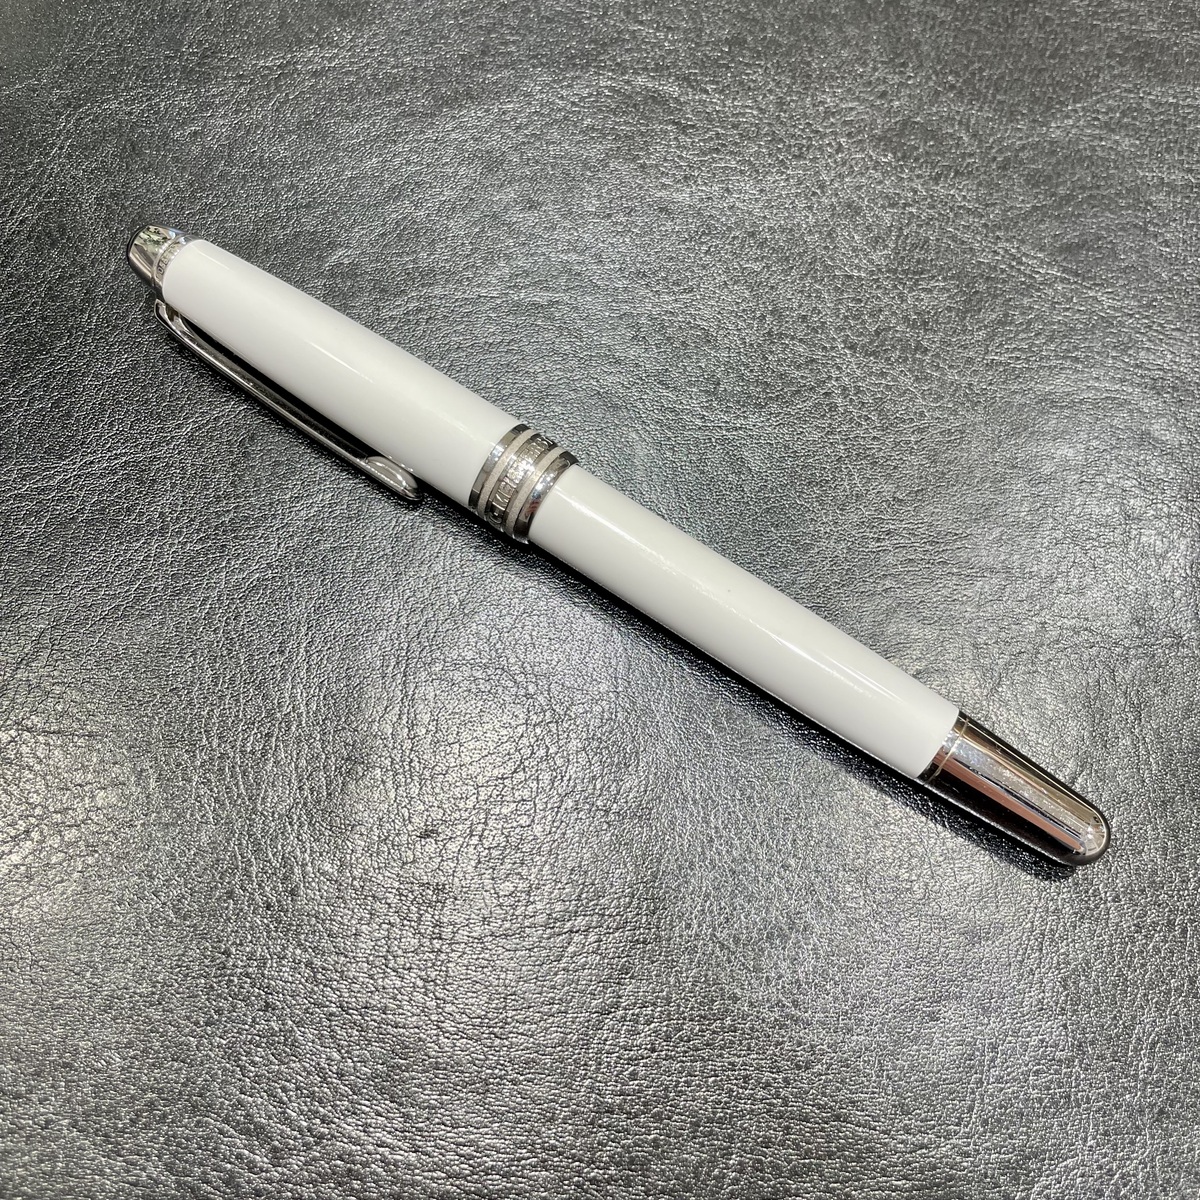 モンブランのホワイト マイスターシュテック ソリテール キャップ式 ローラーボールペンの買取実績です。